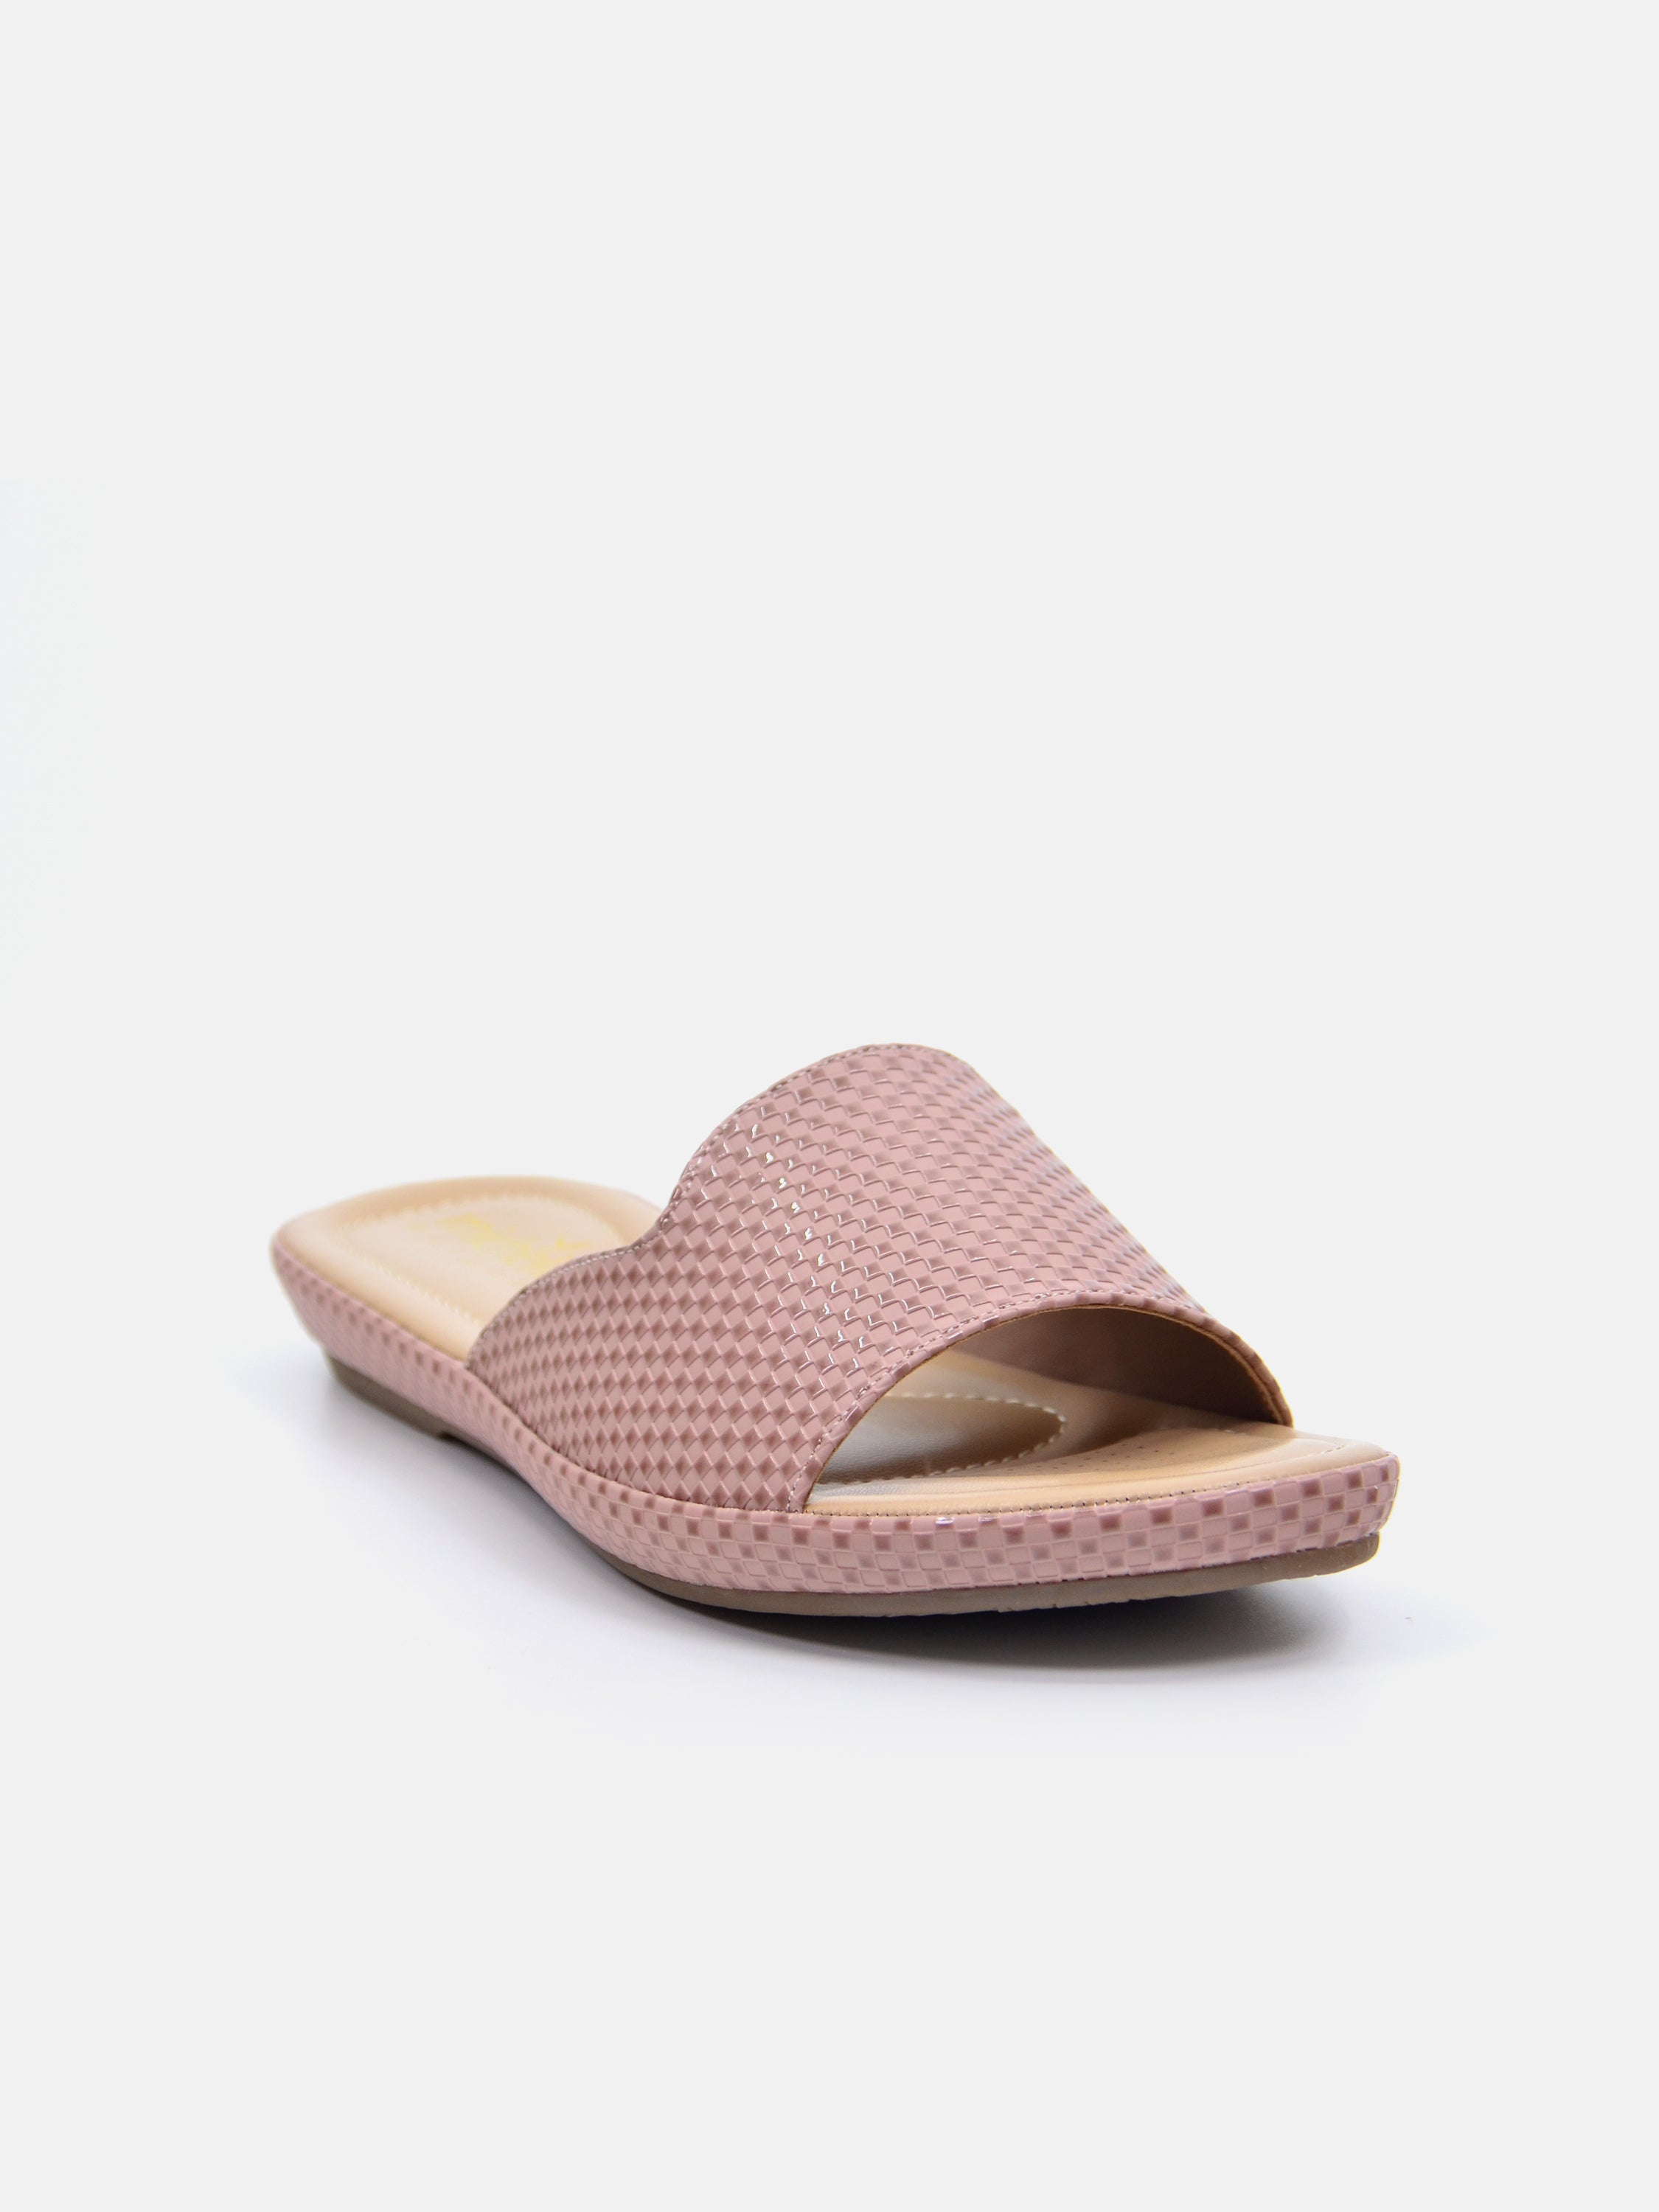 Michelle Morgan 114RC671 Women's Flat Sandals #color_Beige